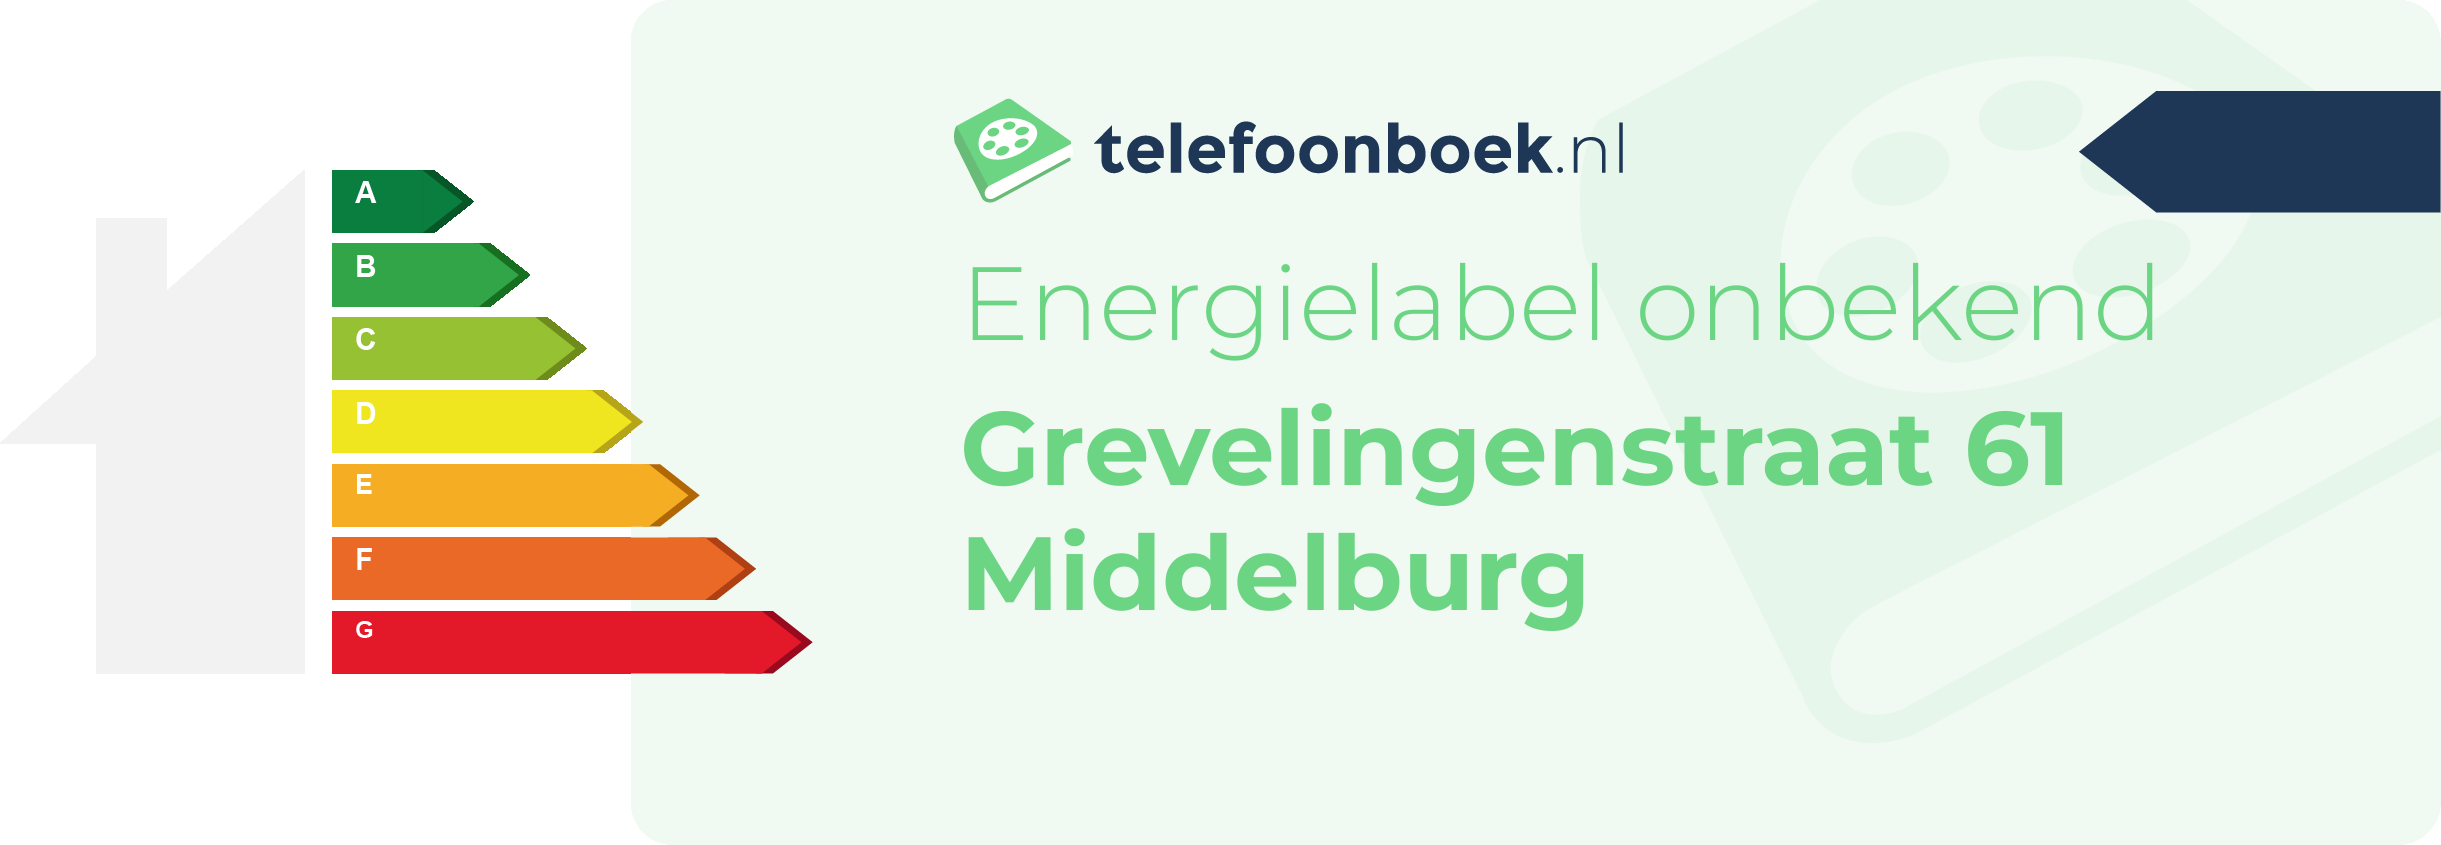 Energielabel Grevelingenstraat 61 Middelburg